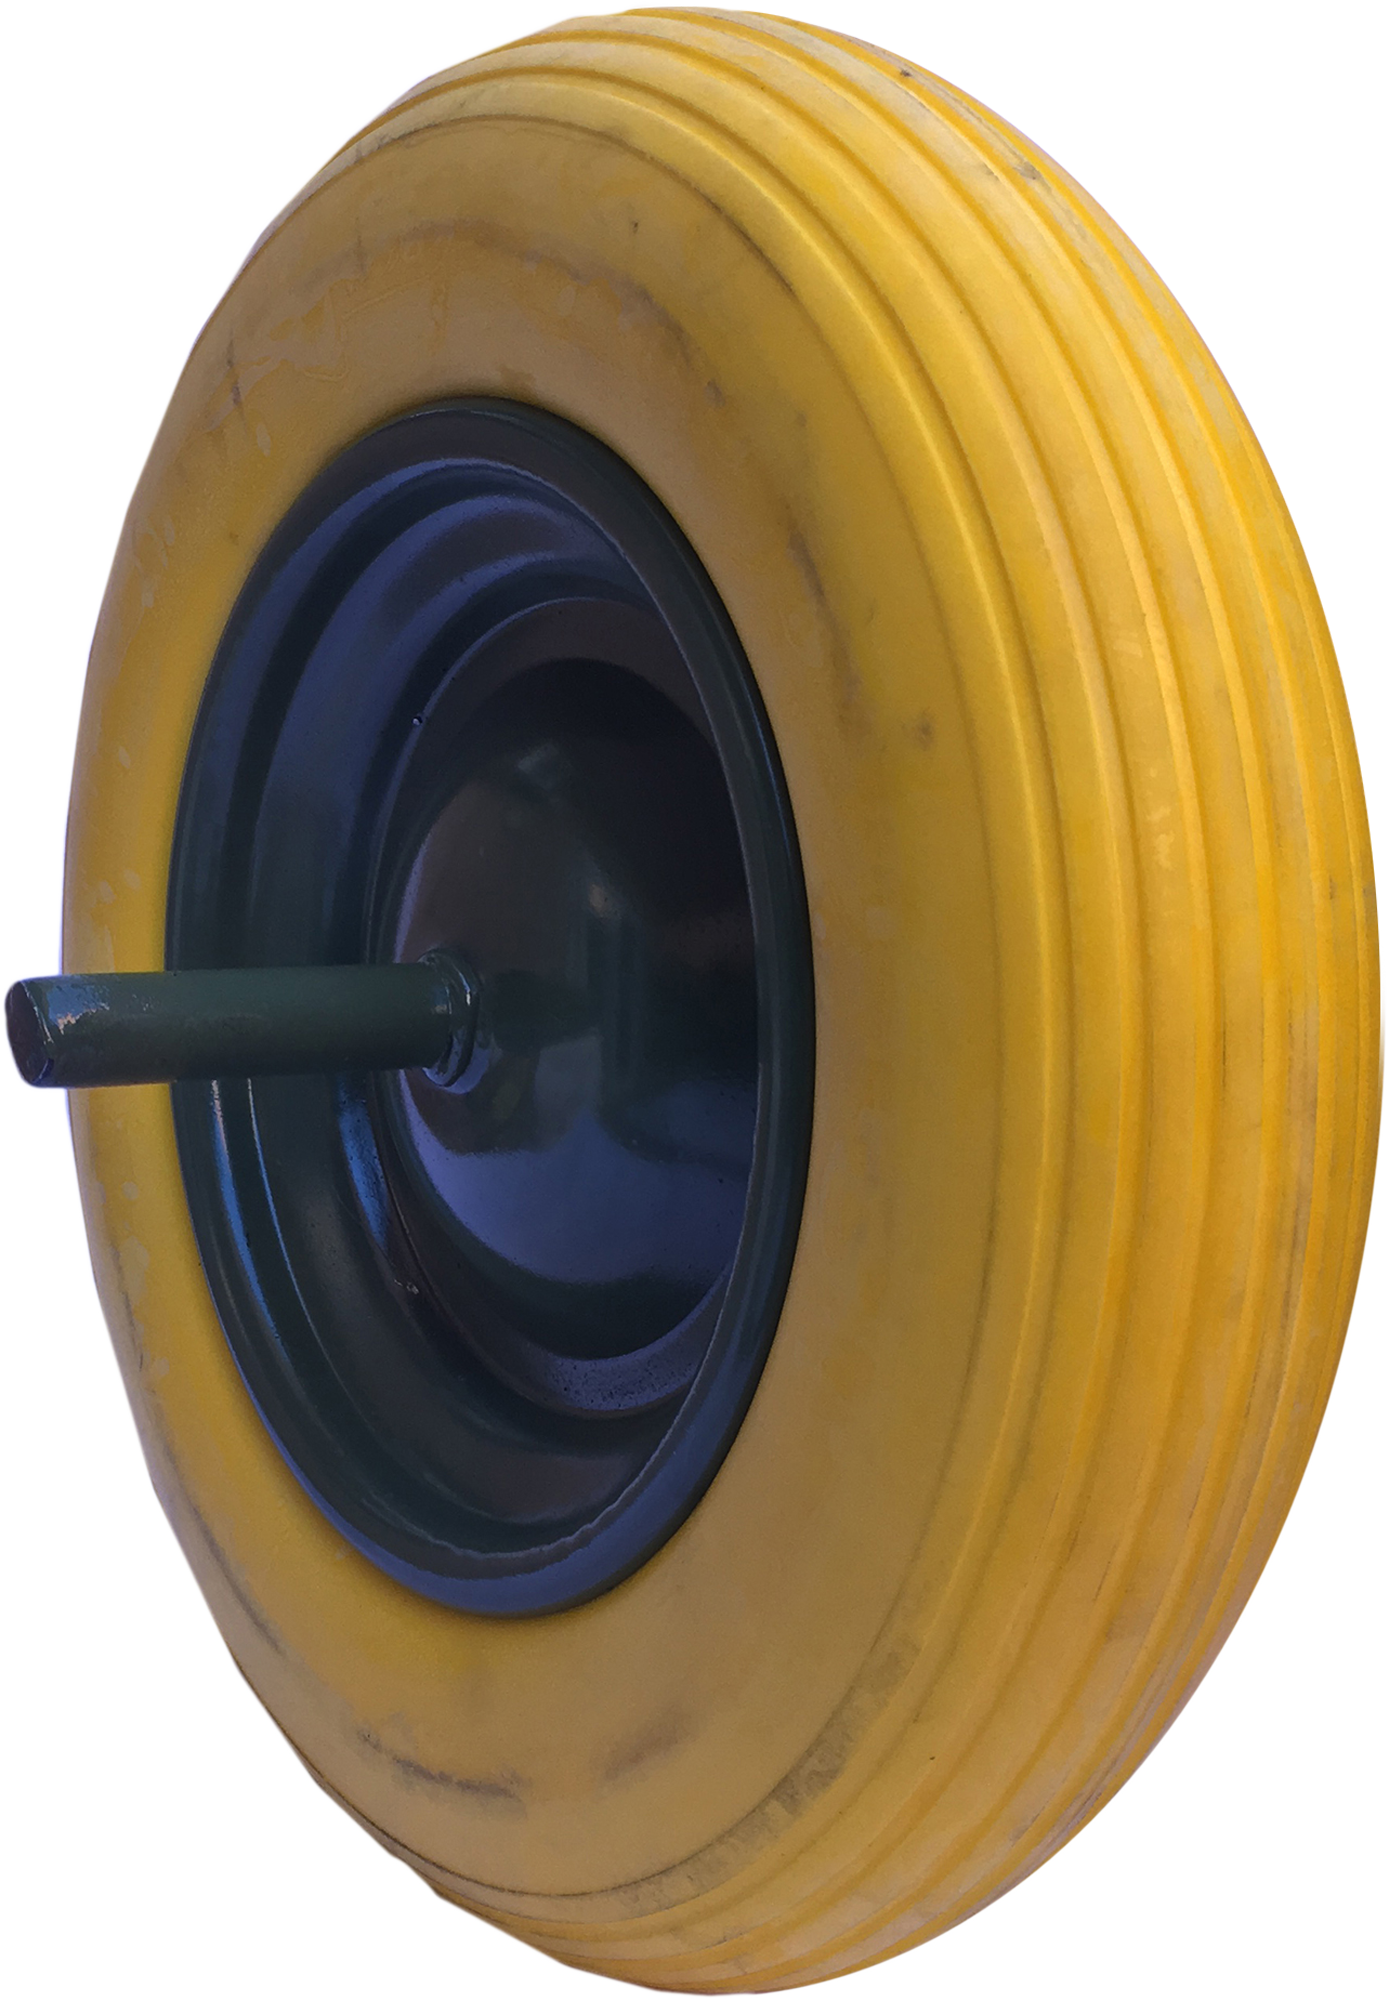 2 x rueda carretilla 4.80/4.00-8 goma maciza amarillo 390 mm